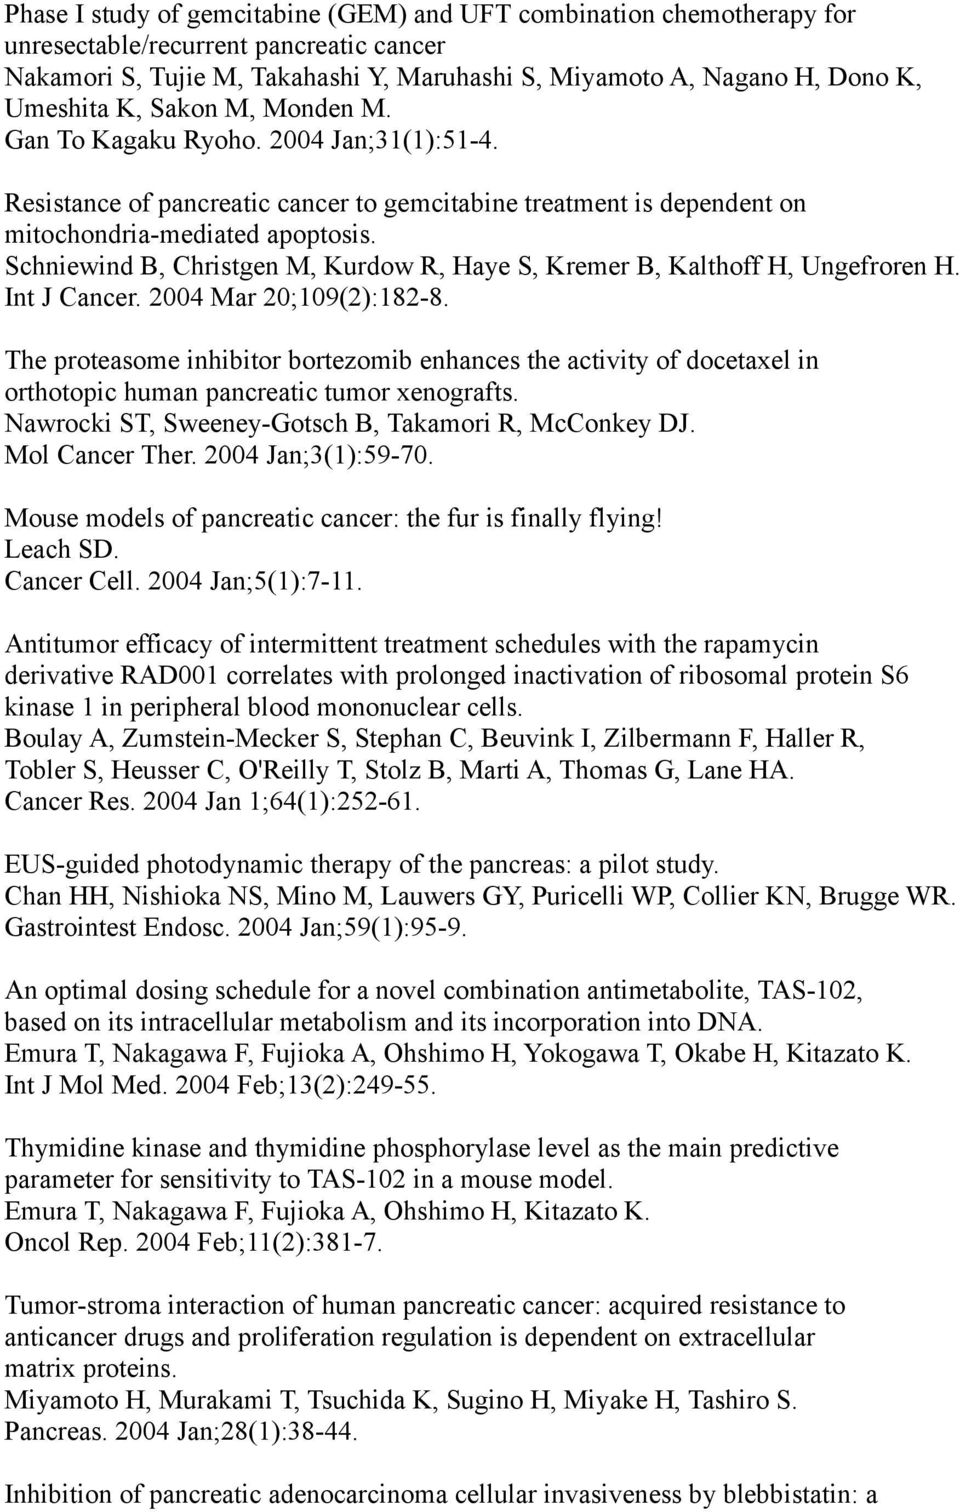 Schniewind B, Christgen M, Kurdow R, Haye S, Kremer B, Kalthoff H, Ungefroren H. Int J Cancer. 2004 Mar 20;109(2):182-8.